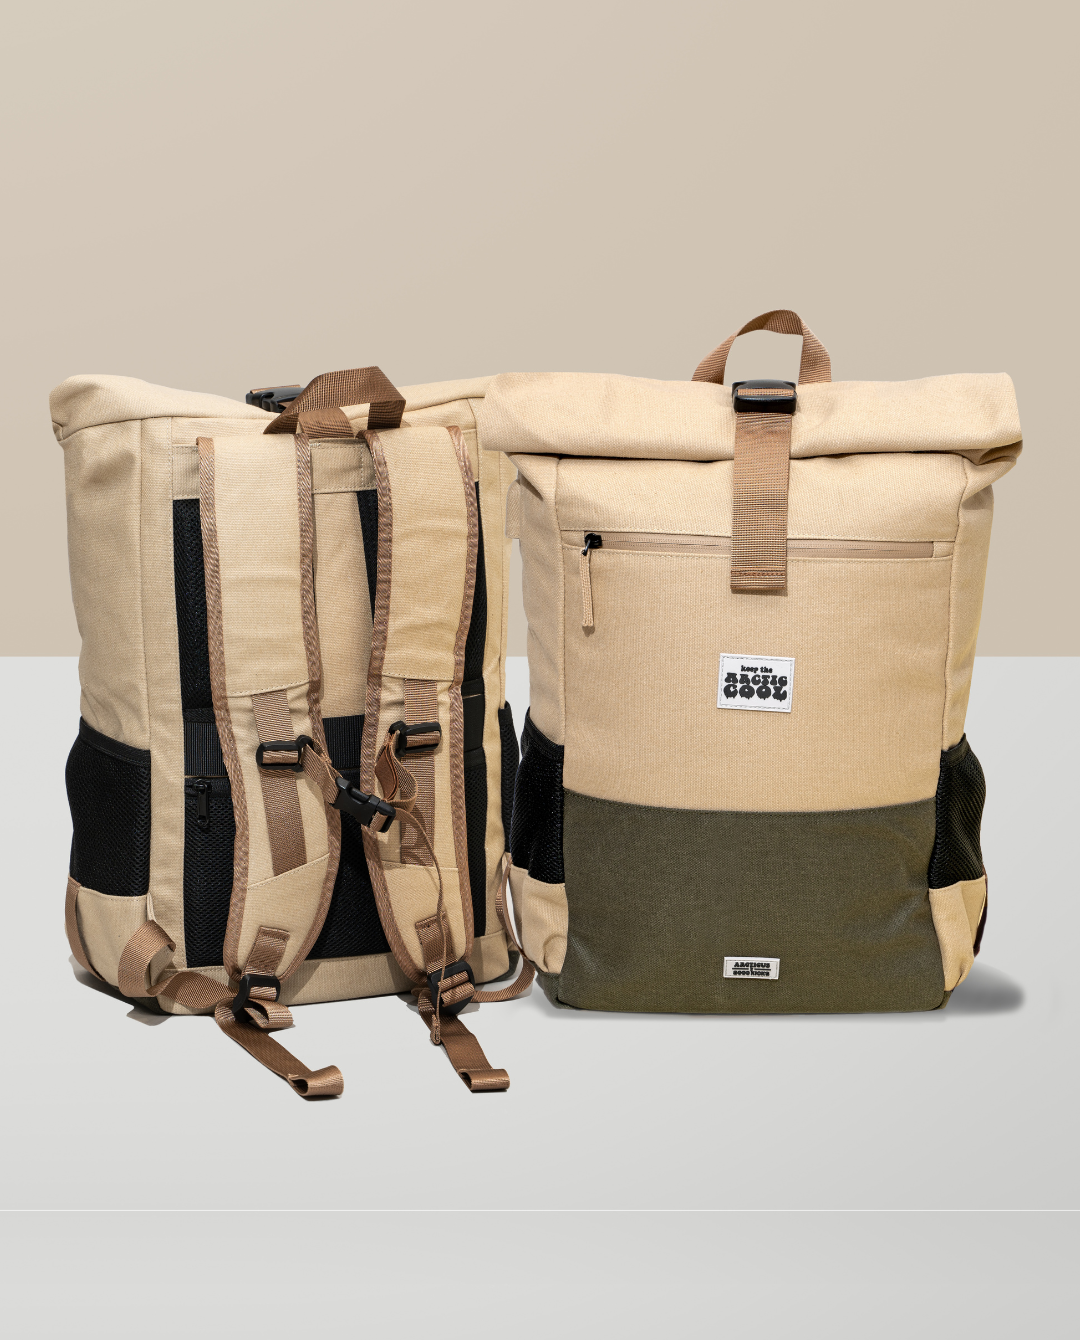 Polare Full Grain Leather Shoulder Backpack Travel Rucksack Sling Bag  Messenger Crossbody Bag Daypack